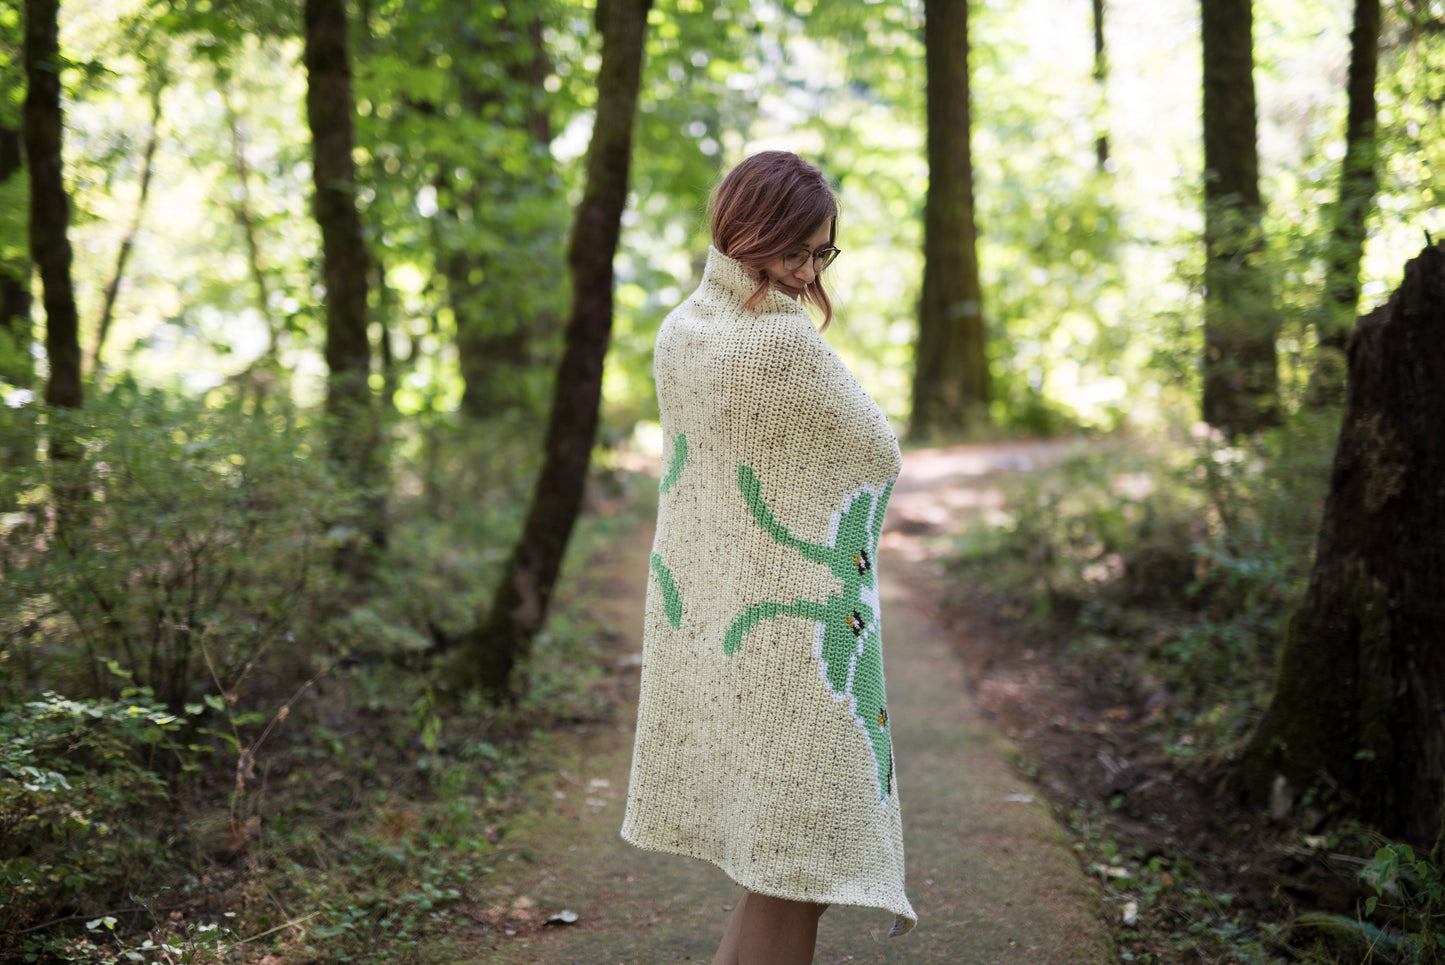 Crochet Pattern: The Luna Blanket